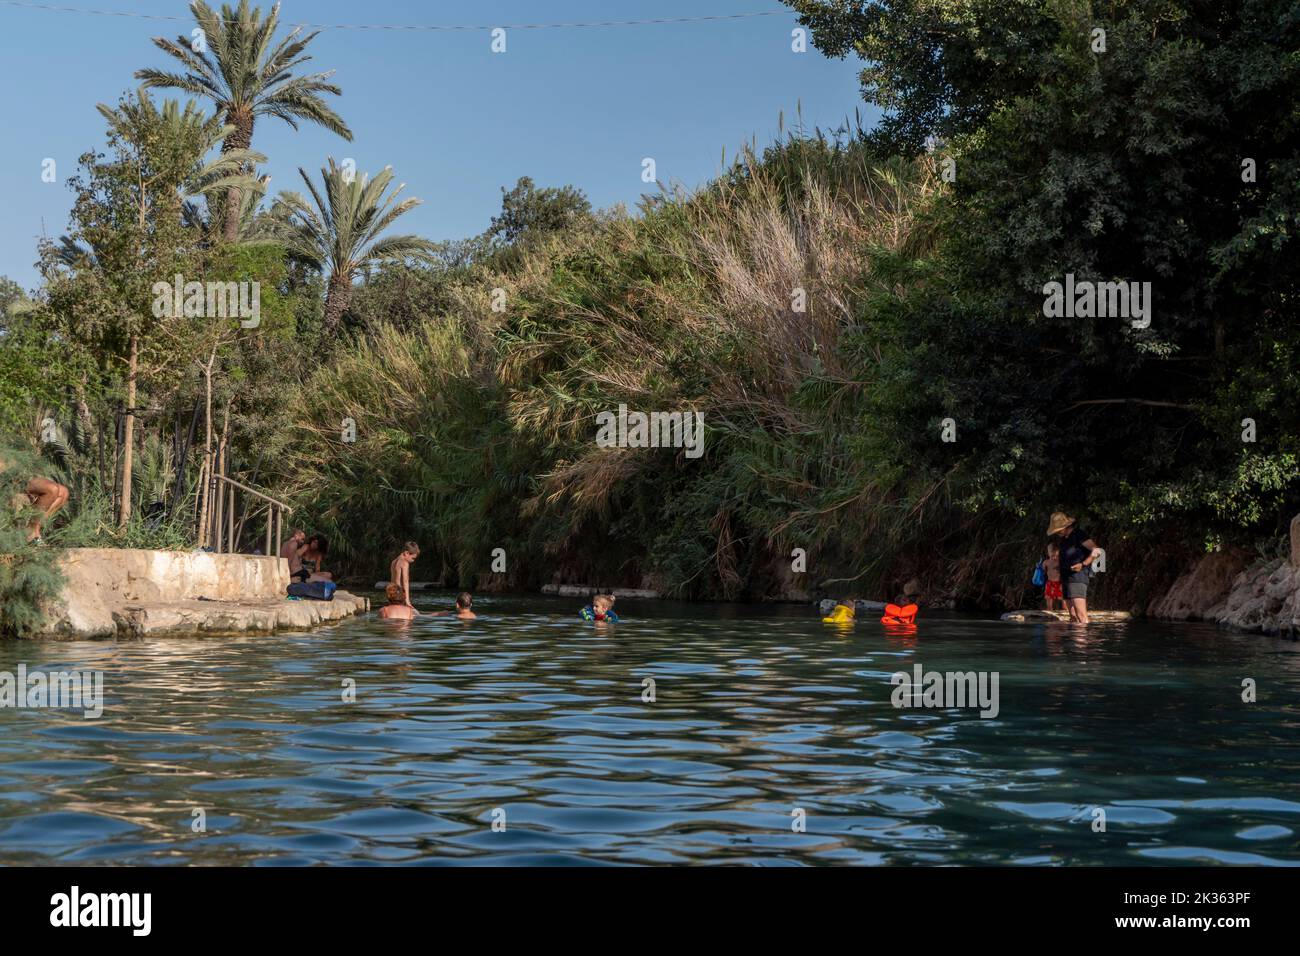 Les gens se baignent dans une piscine d'eau de source naturelle du ruisseau Amal qui traverse le parc national de Gan Hashlosha également connu sous son nom arabe Sakhne en Israël Banque D'Images